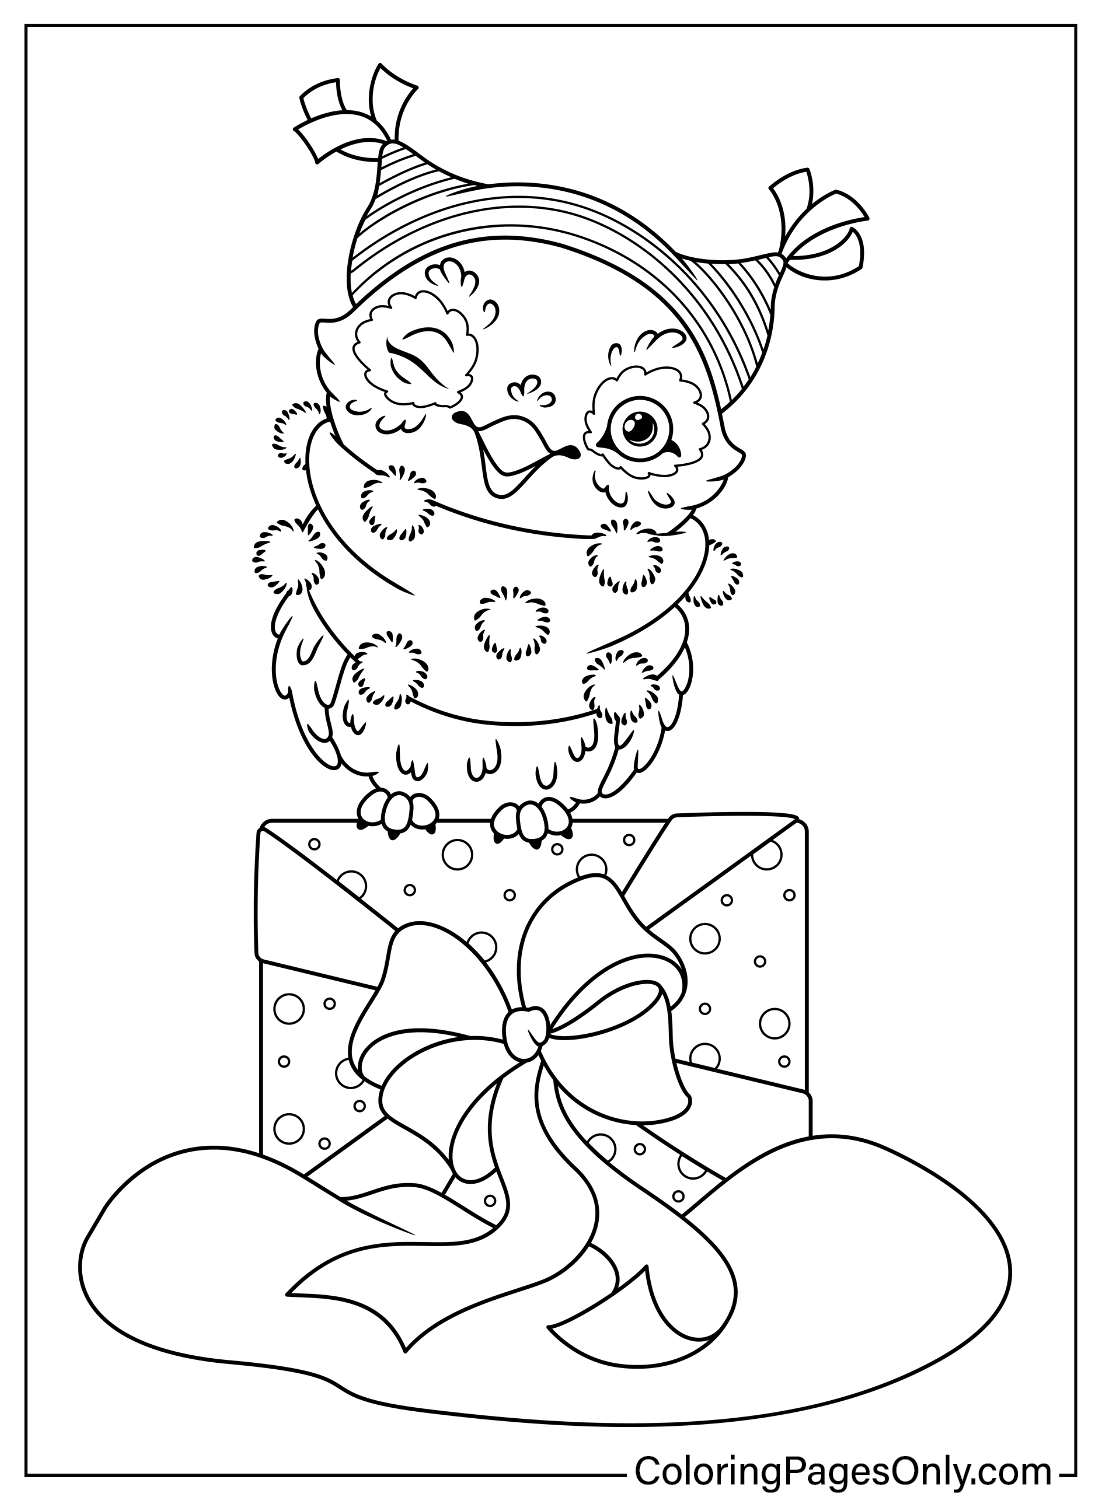 Página para colorear de búho navideño de animales navideños